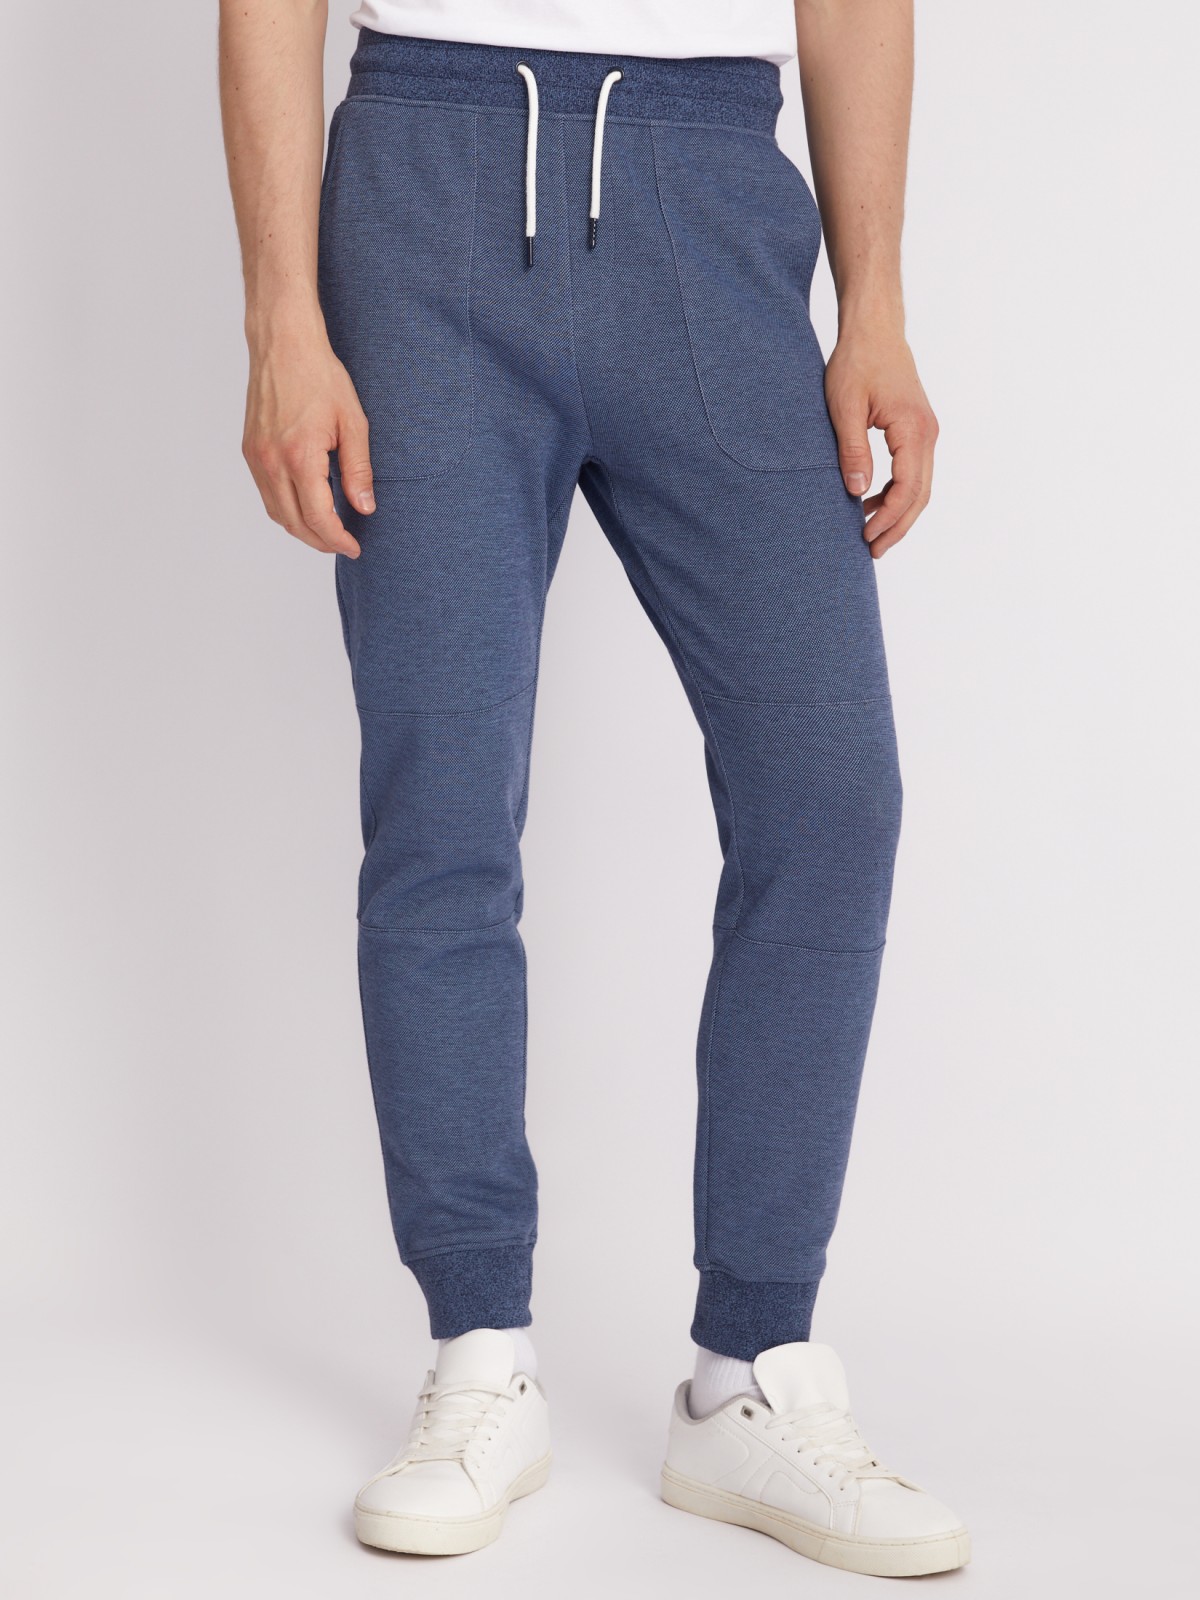 Трикотажные брюки-джоггеры в спортивном стиле zolla 213317604053, цвет голубой, размер S - фото 2